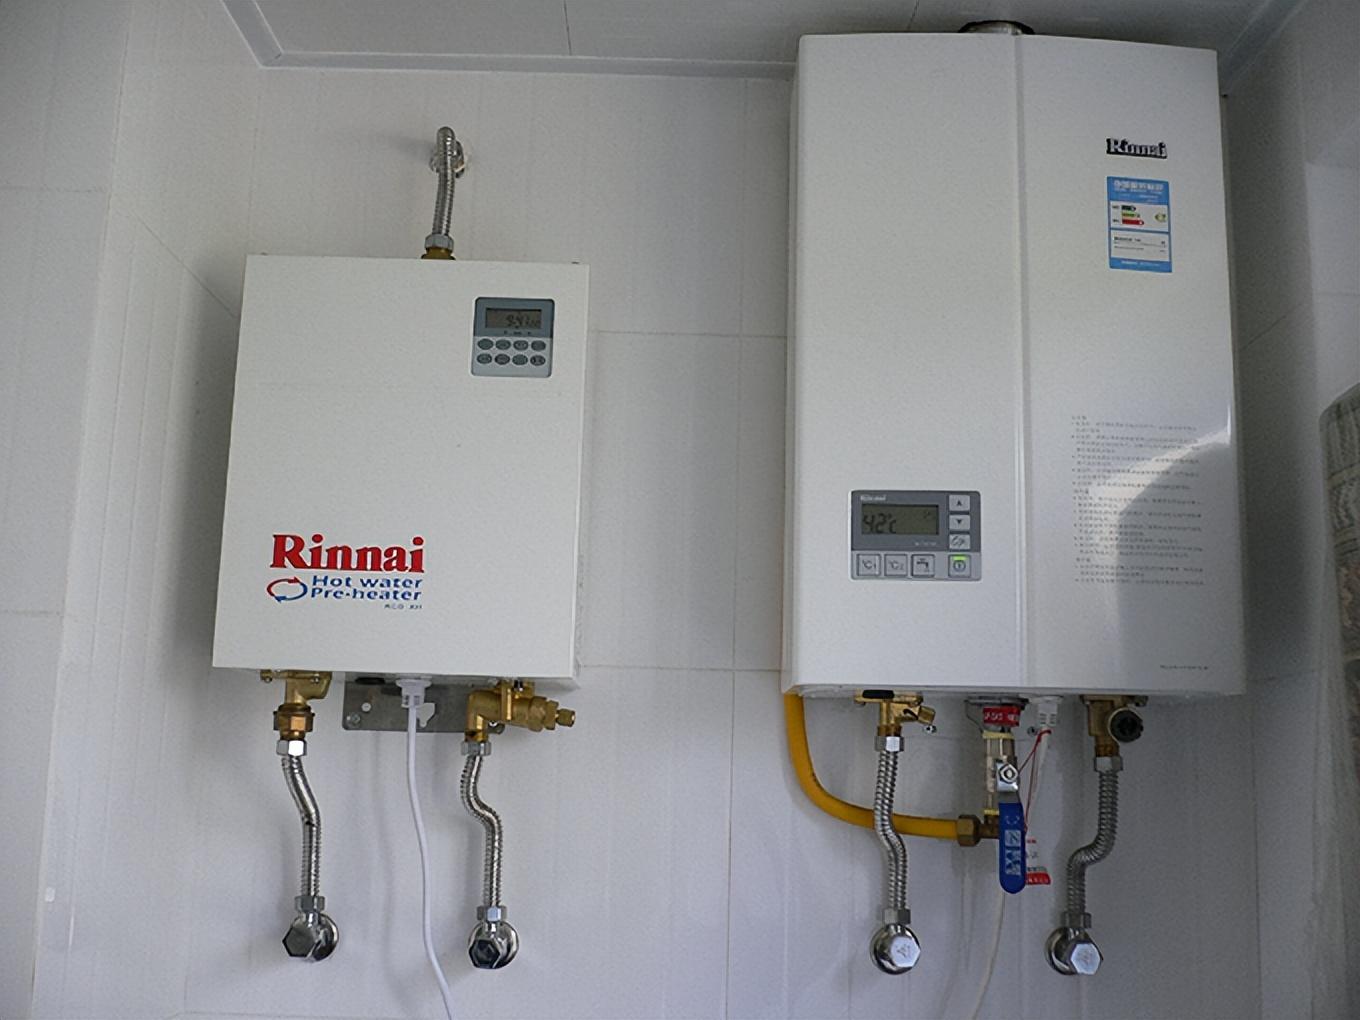 燃气热水器会不会中毒 能安在卫生间吗?